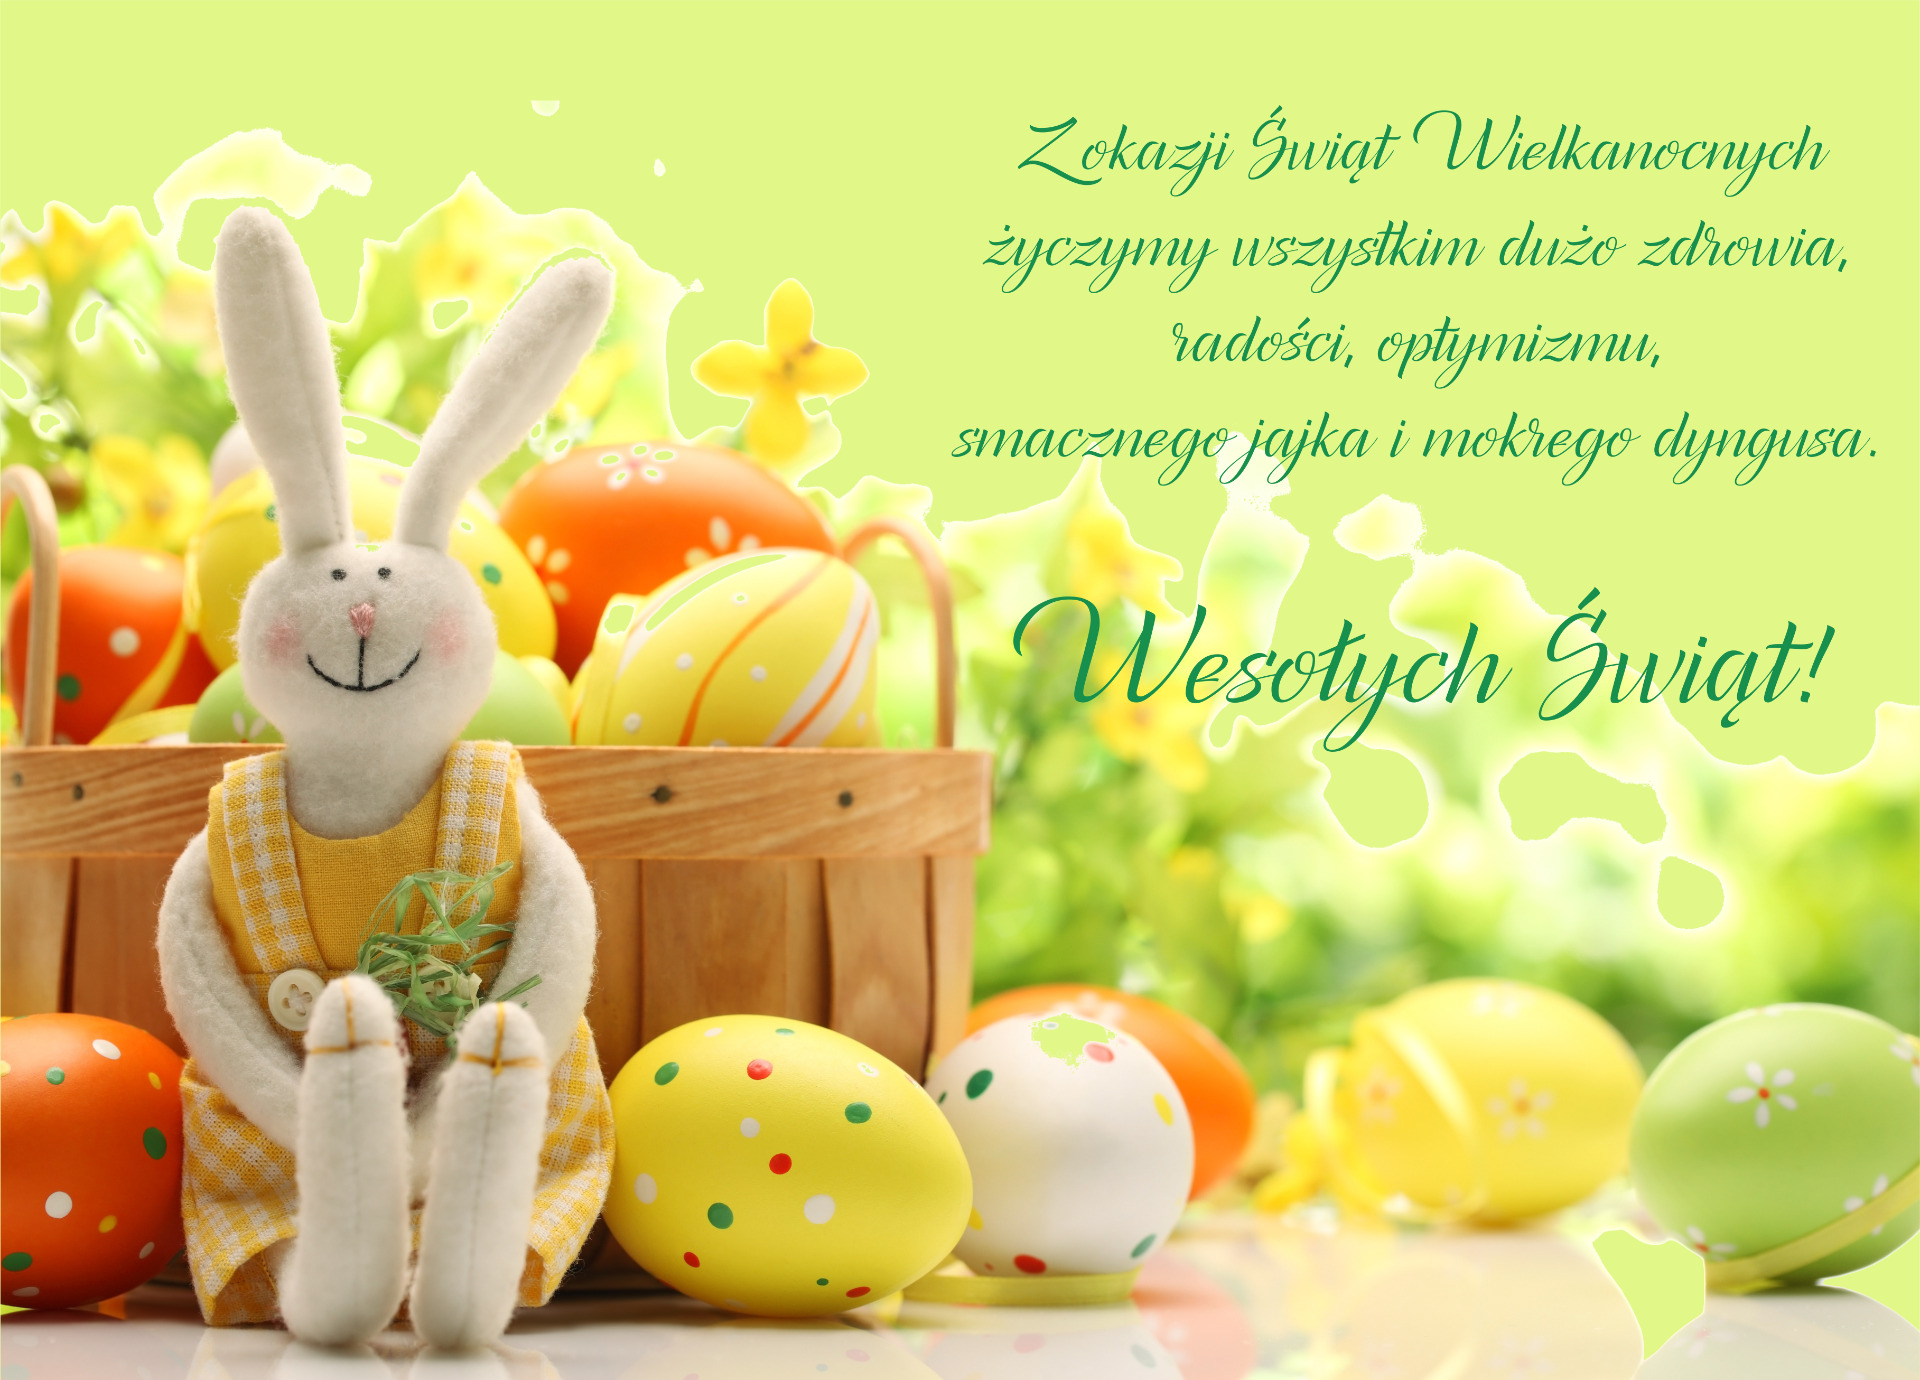 Z okazji Świąt Wielkanocnych życzymy wszystkim dużo zdrowia, radości, optymizmu, smacznego jajka i mokrego dyngusa. Wesołych Świąt!